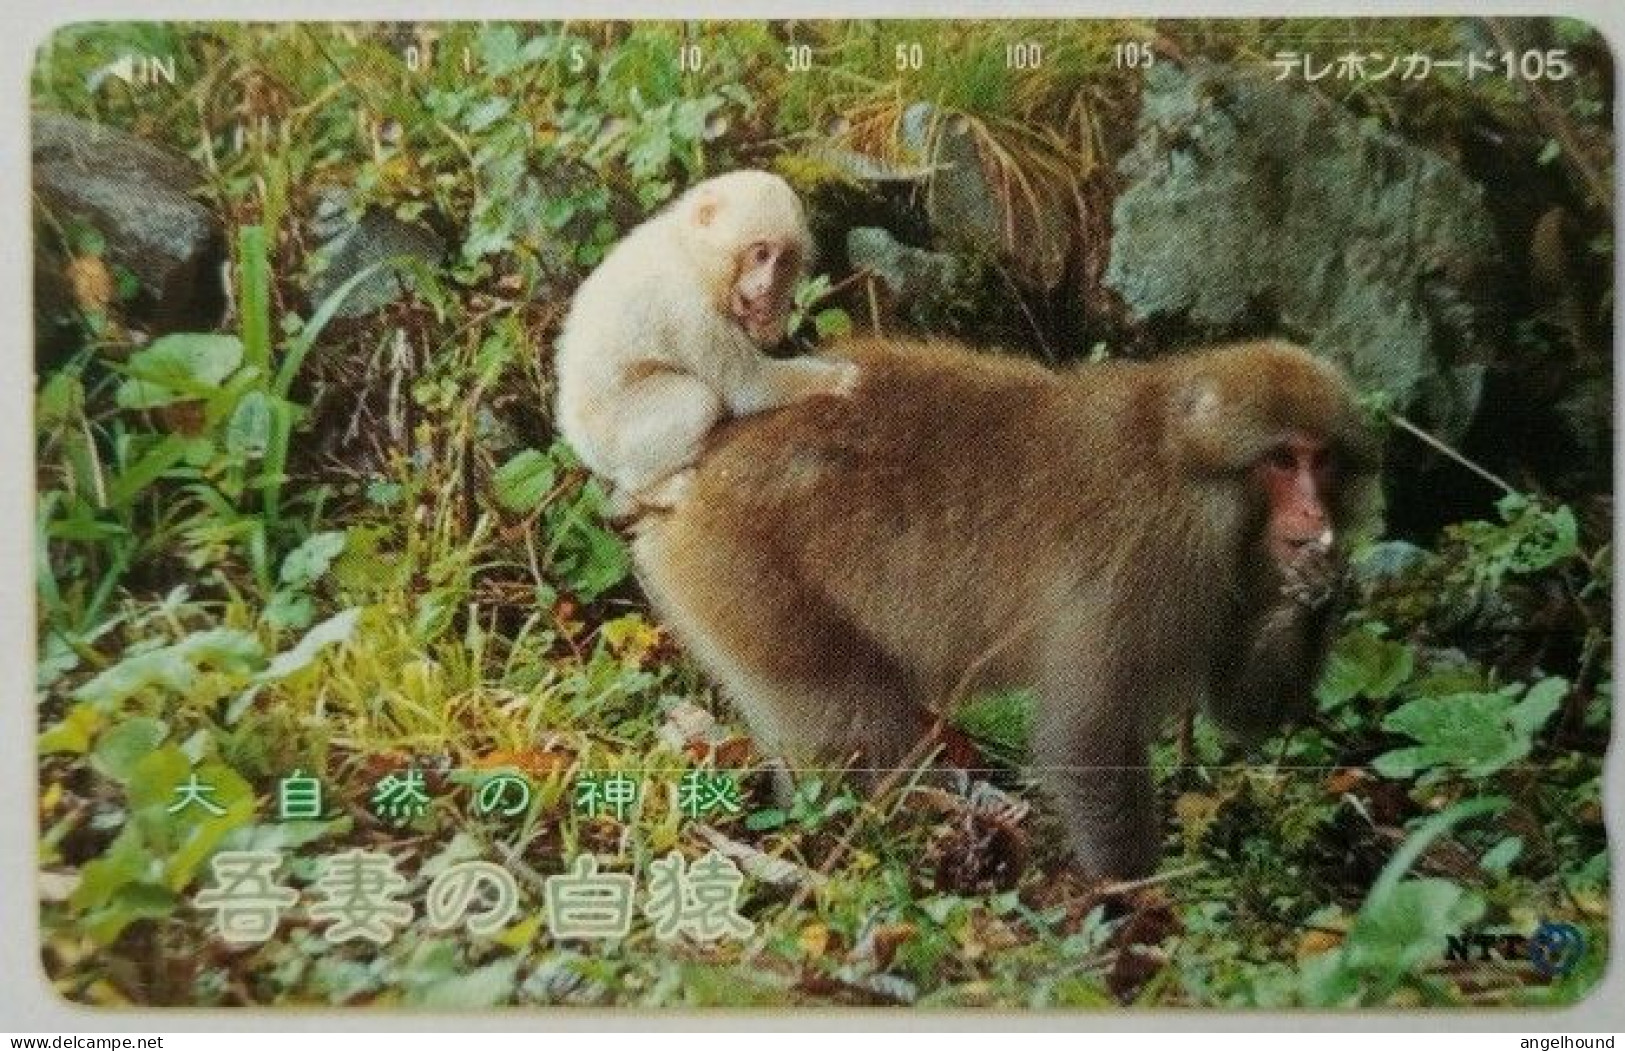 Japan 105 Units - Nature's Kandoriha Azuma's - White Monkey - Japan